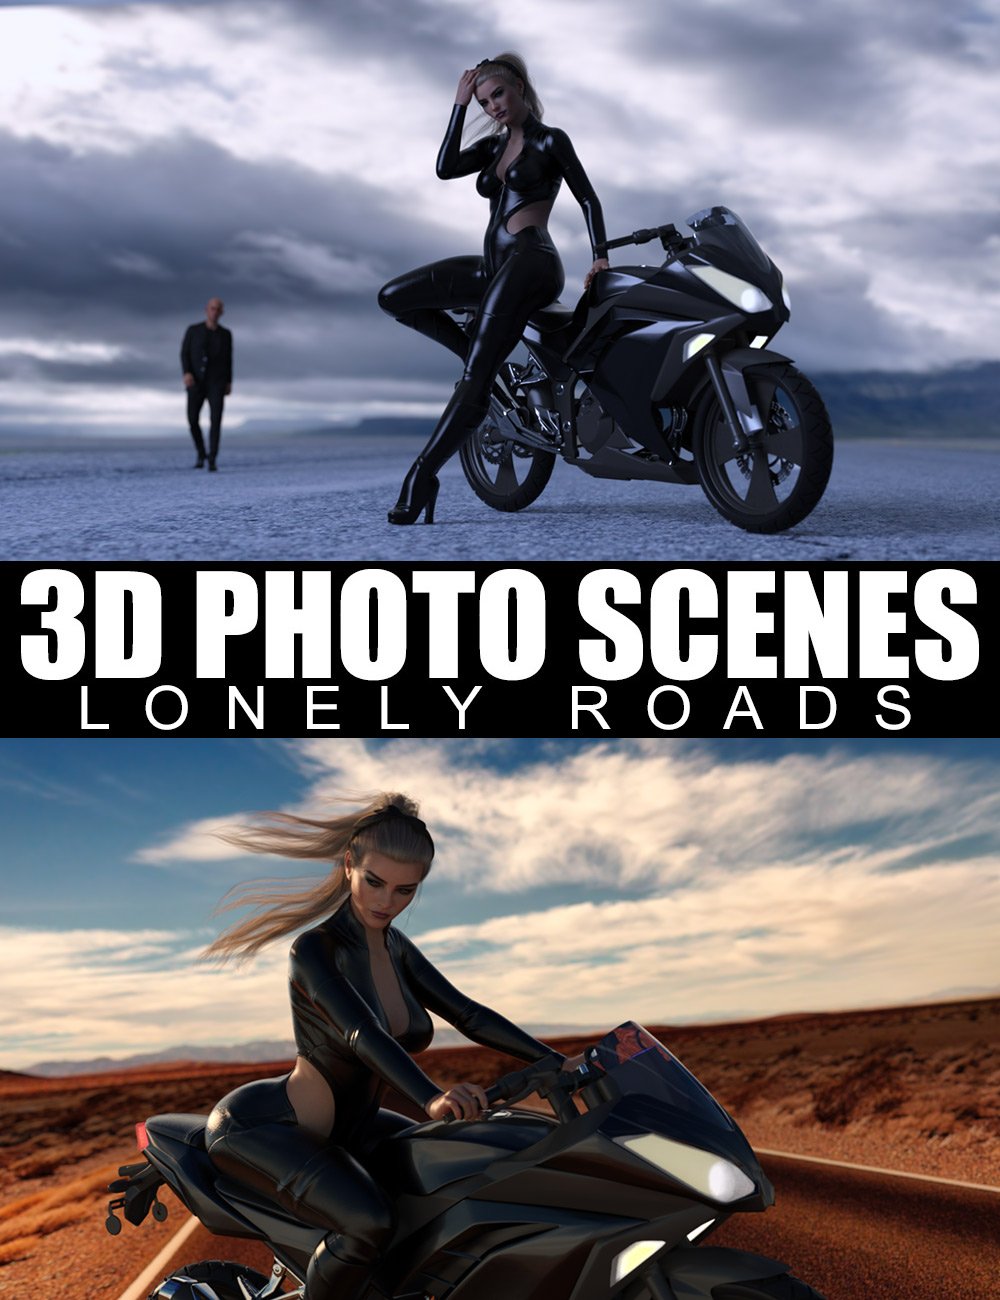 3D Photo Scenes - Lonely Roads by: Dreamlight, 3D Models by Daz 3D